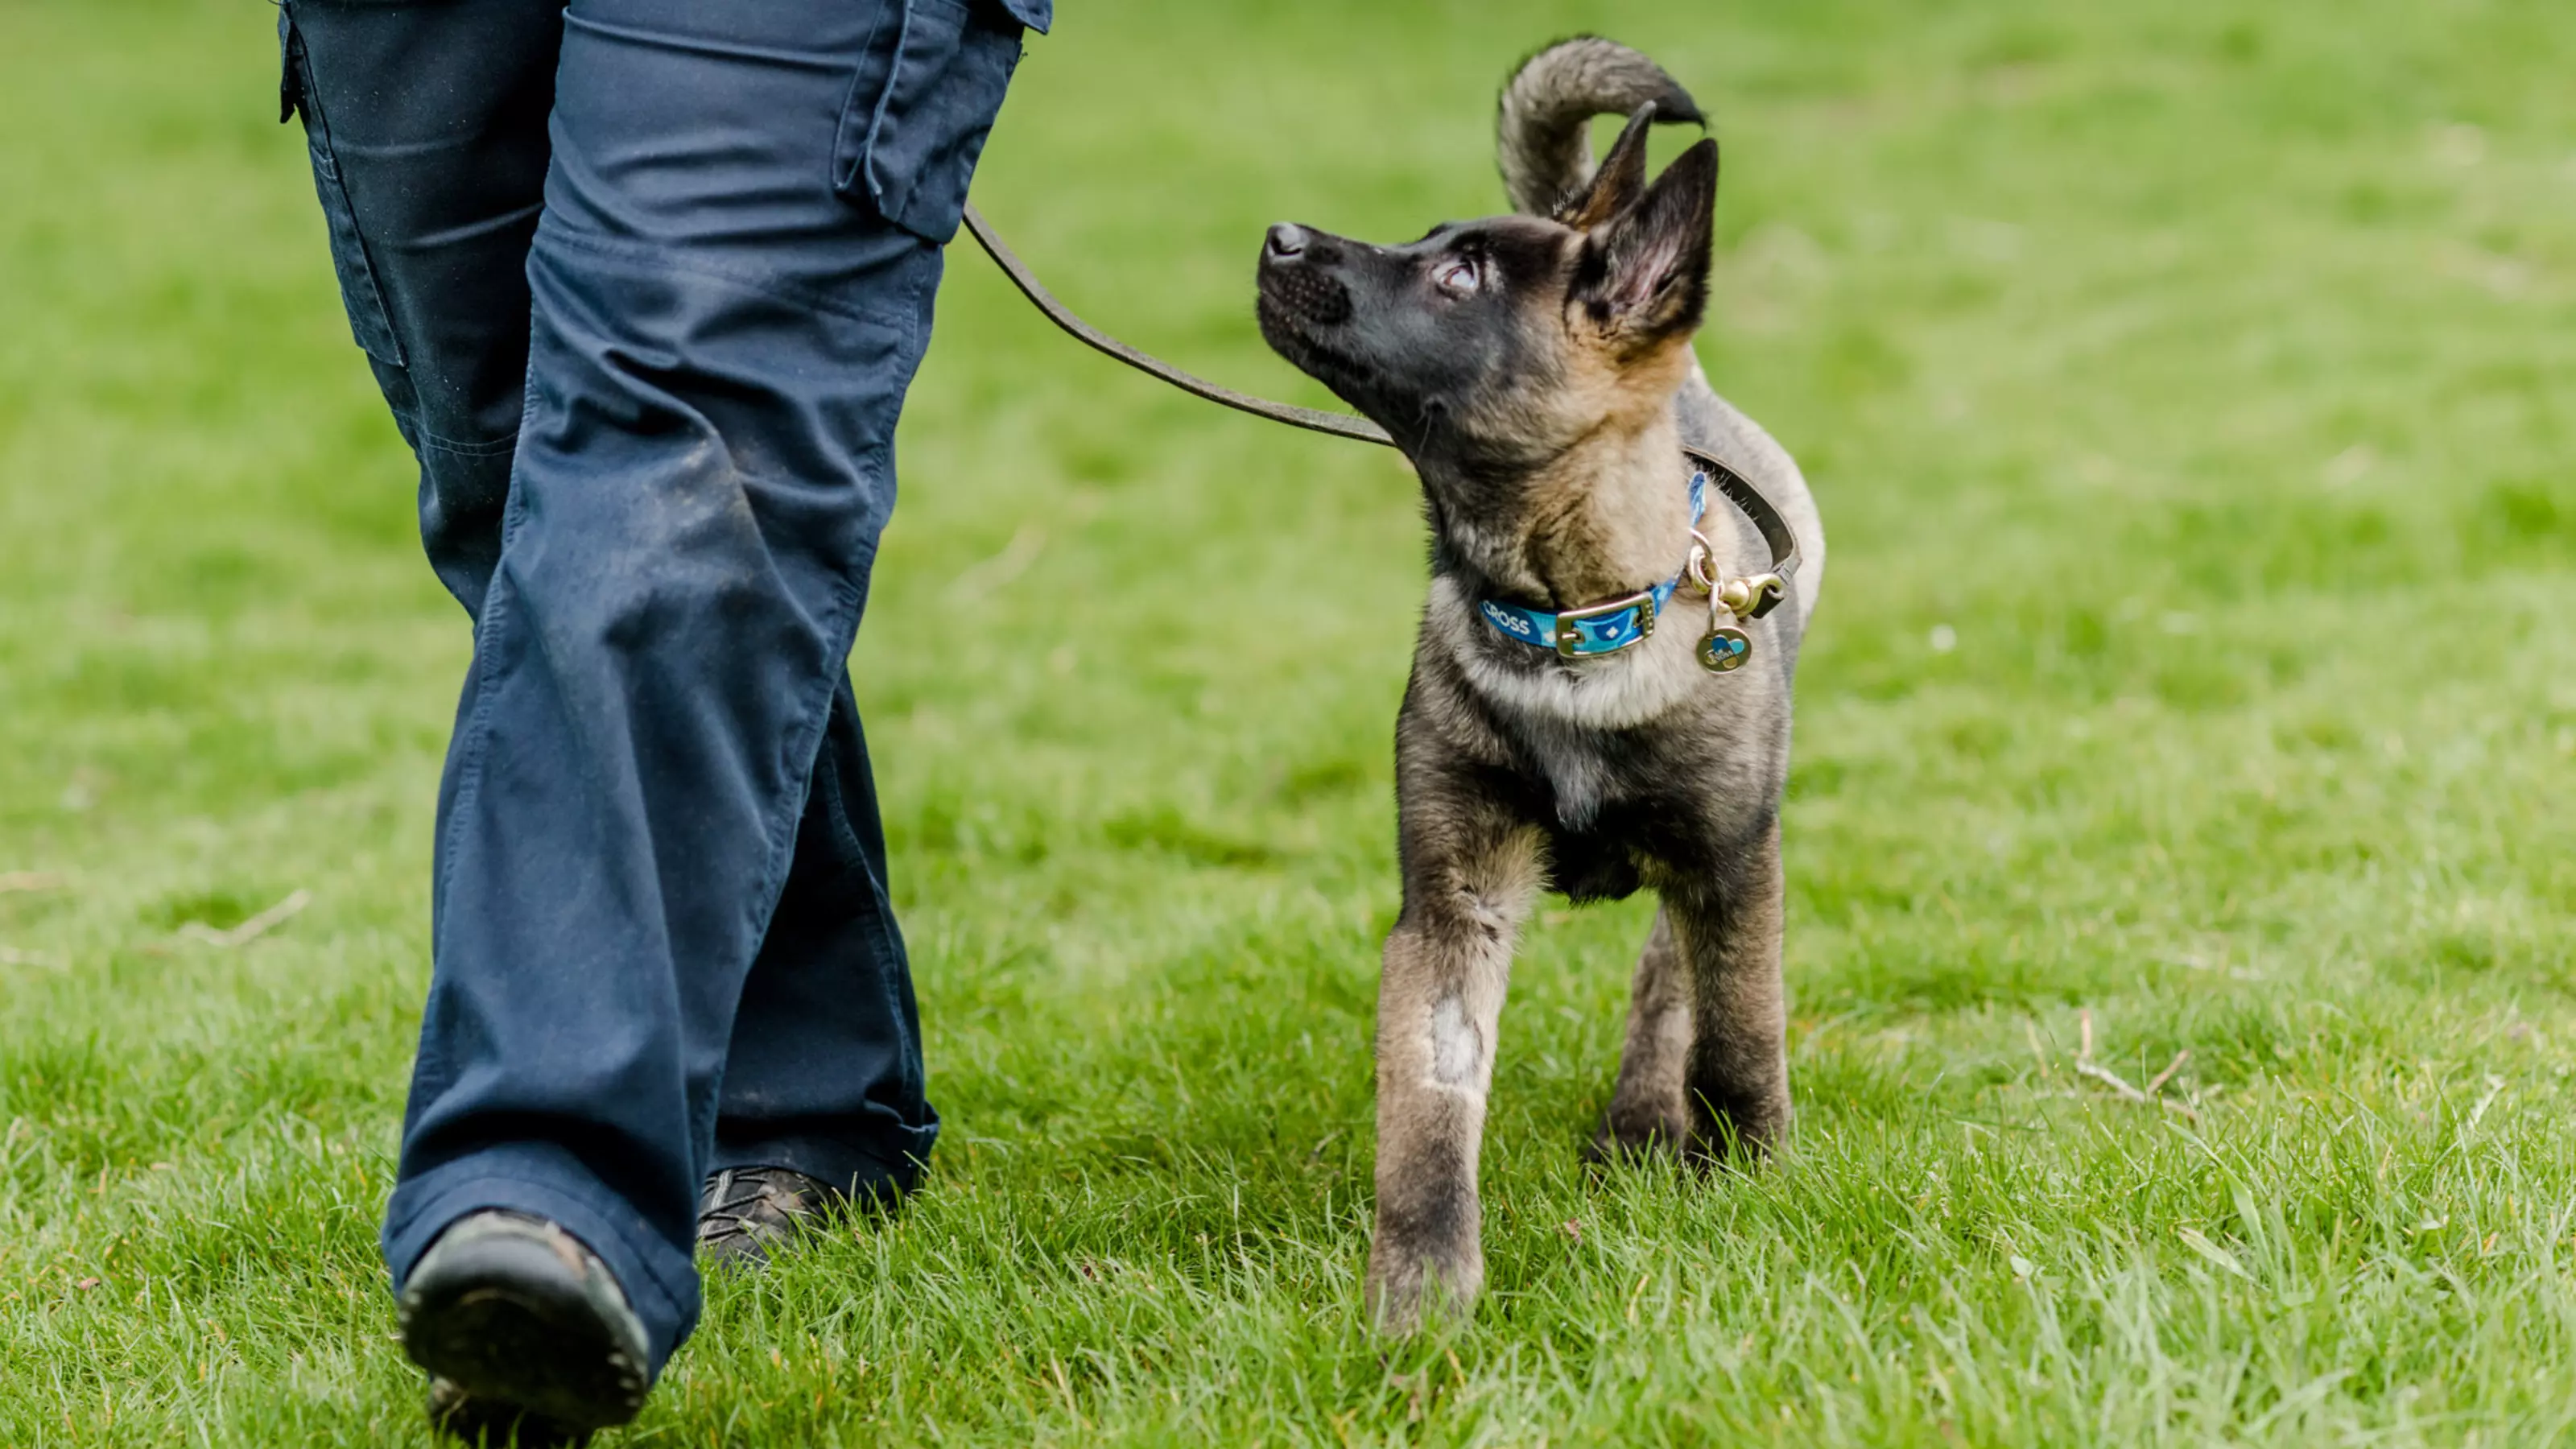 Puppy Belgian shepherd on lead looking at owner